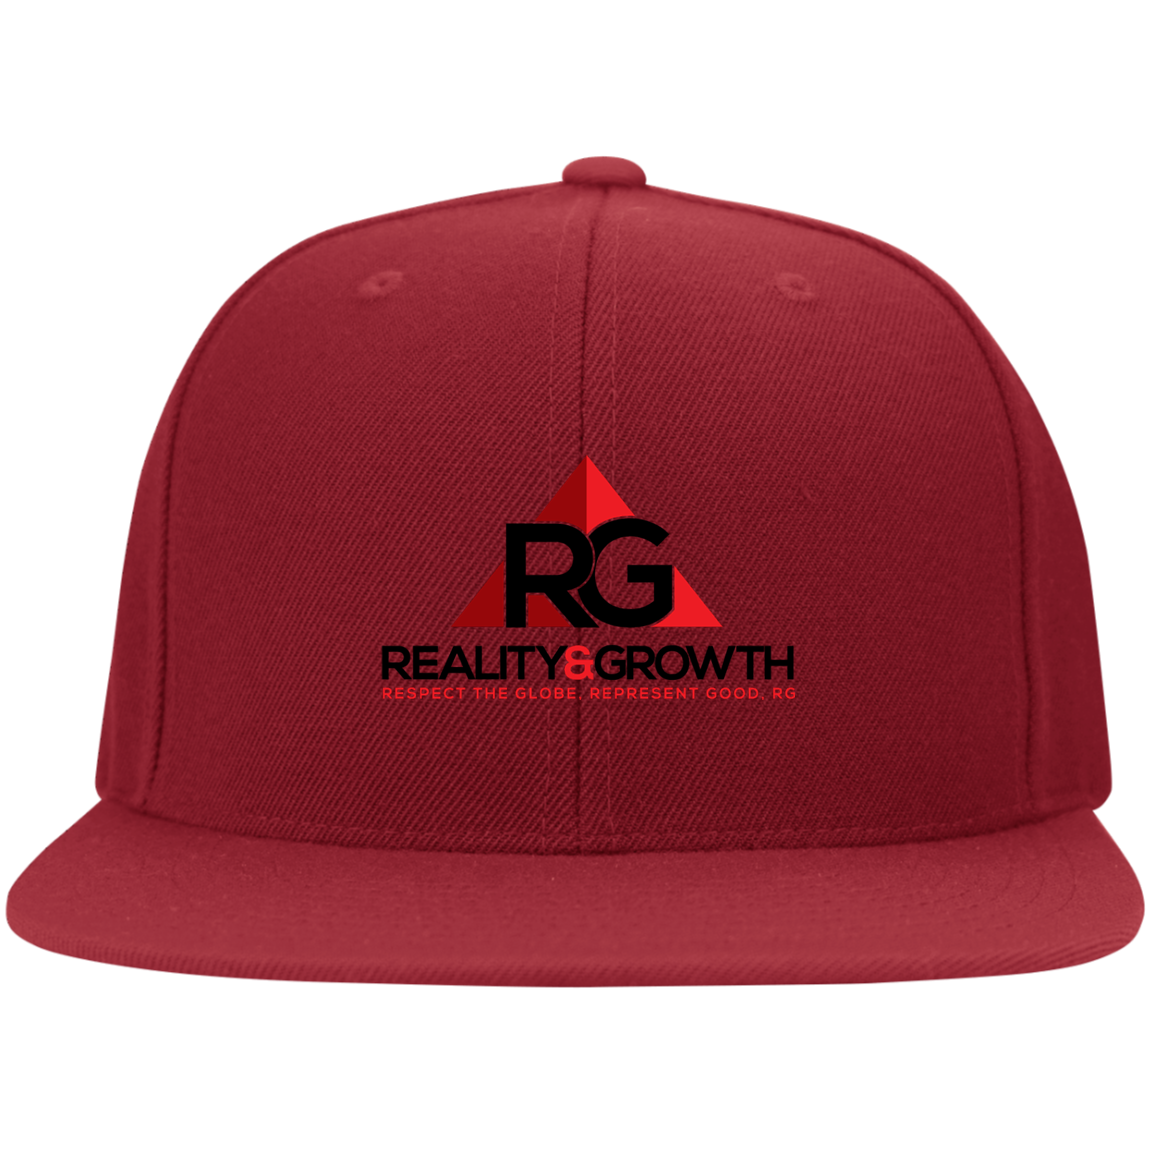 RG Flexfit Cap